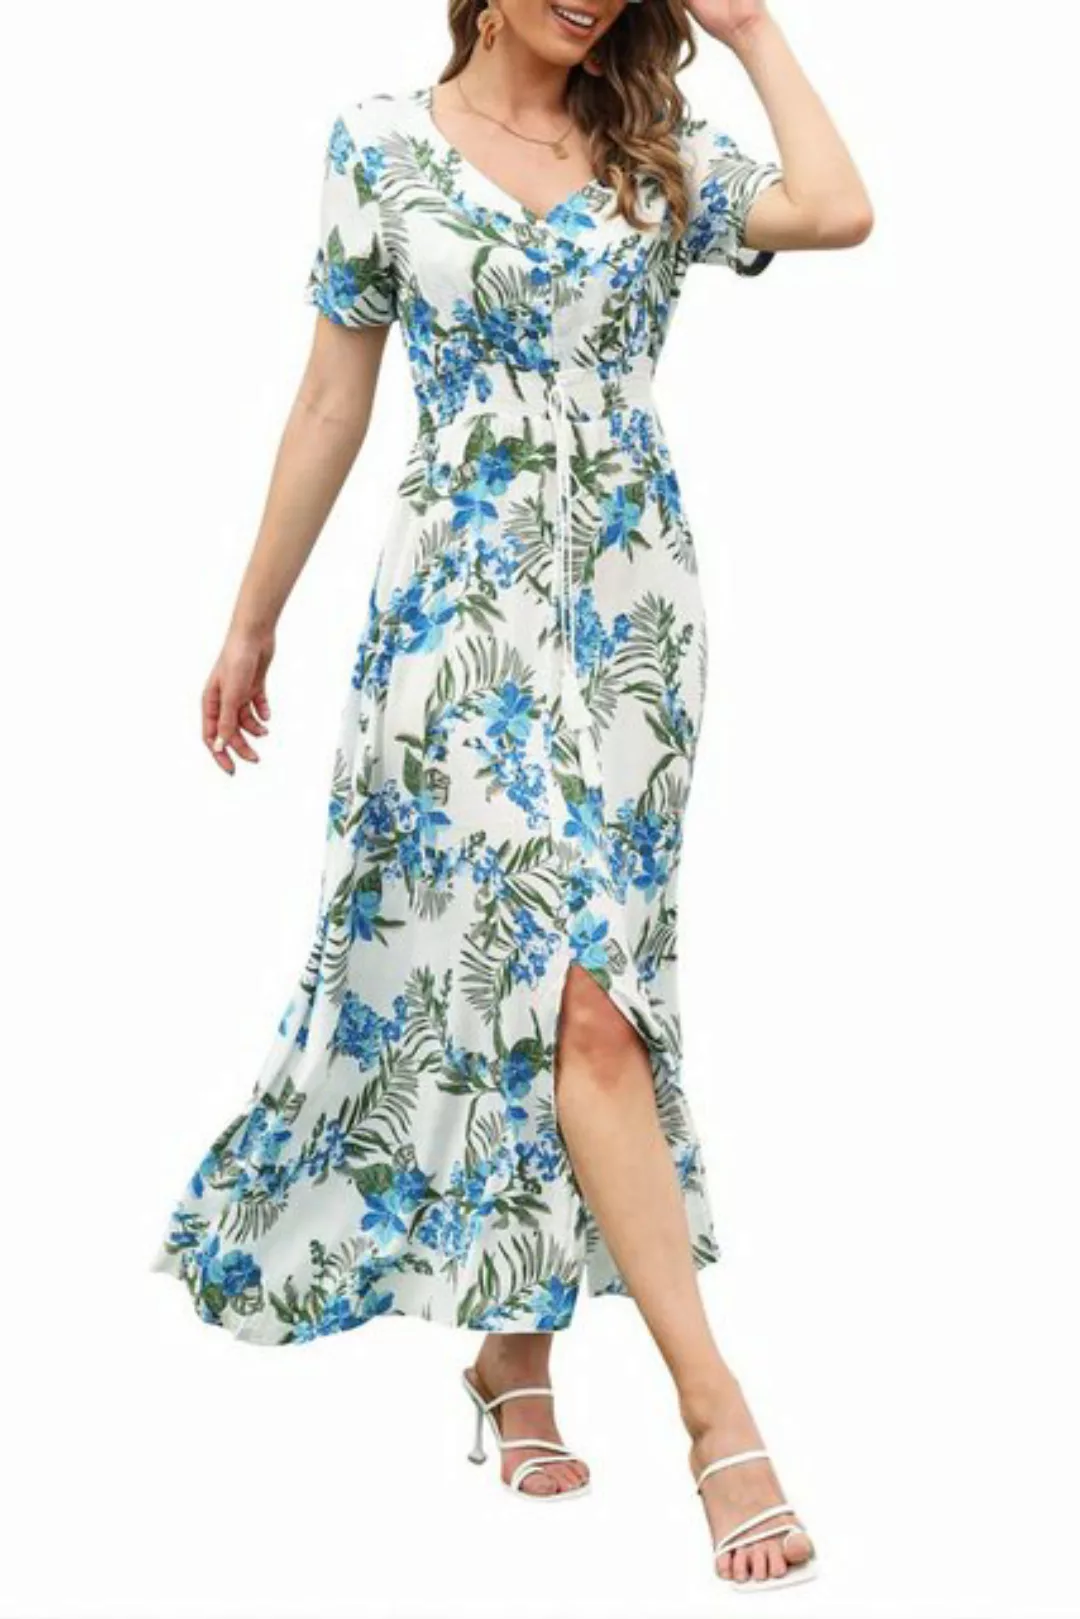 JDMGZSR Strandkleid Damen Sommerkleid Blumenmuster Druckkleid V-Ausschnitt günstig online kaufen